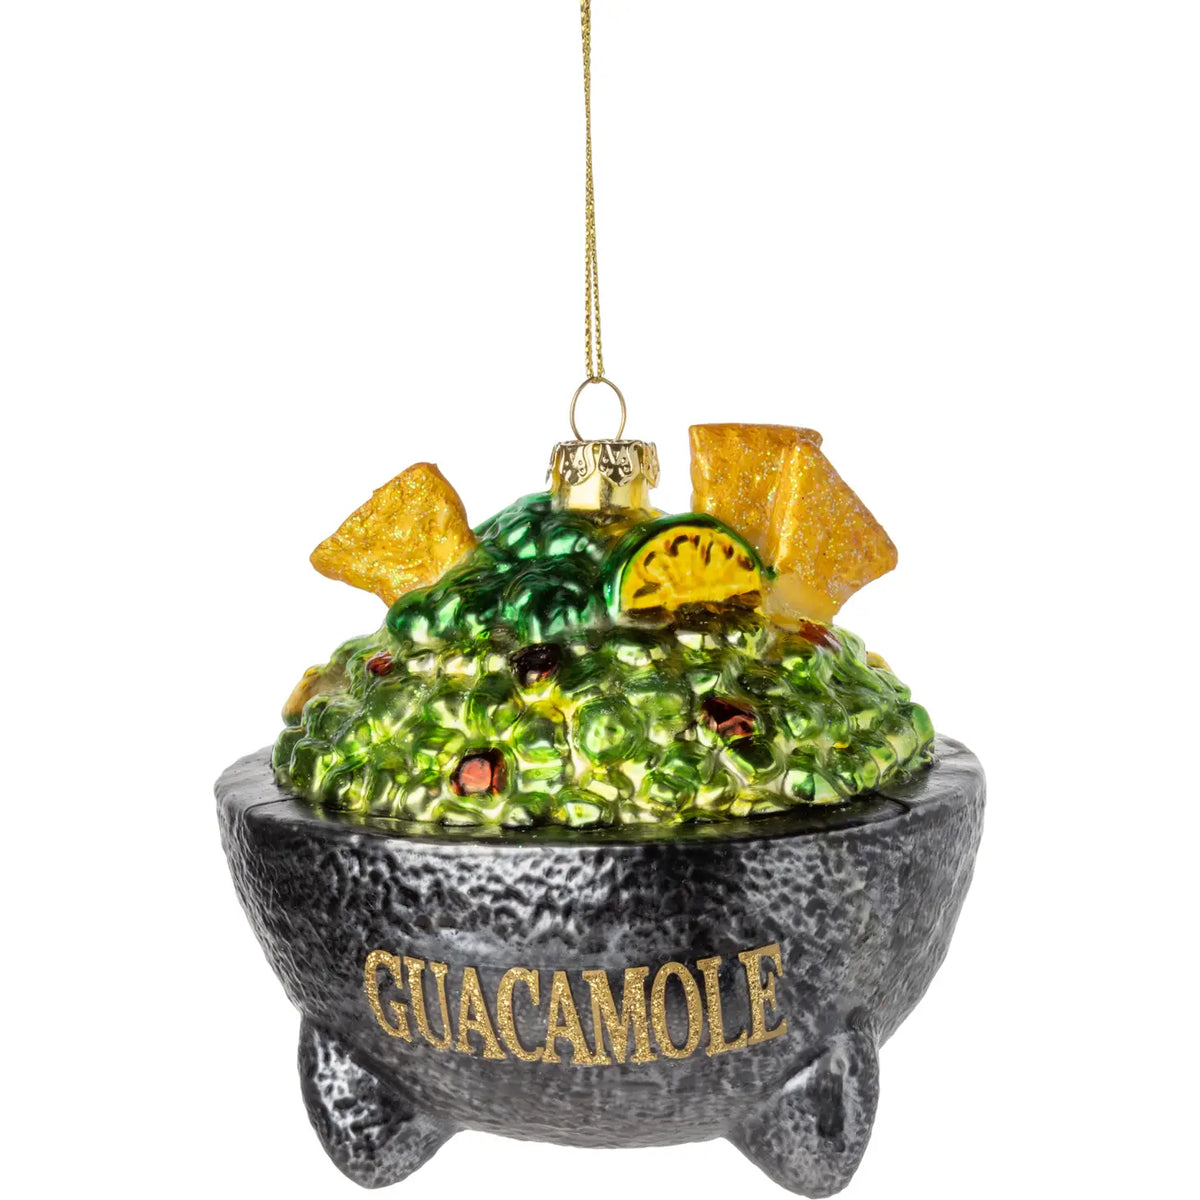 Glass guacamole bowl ornament